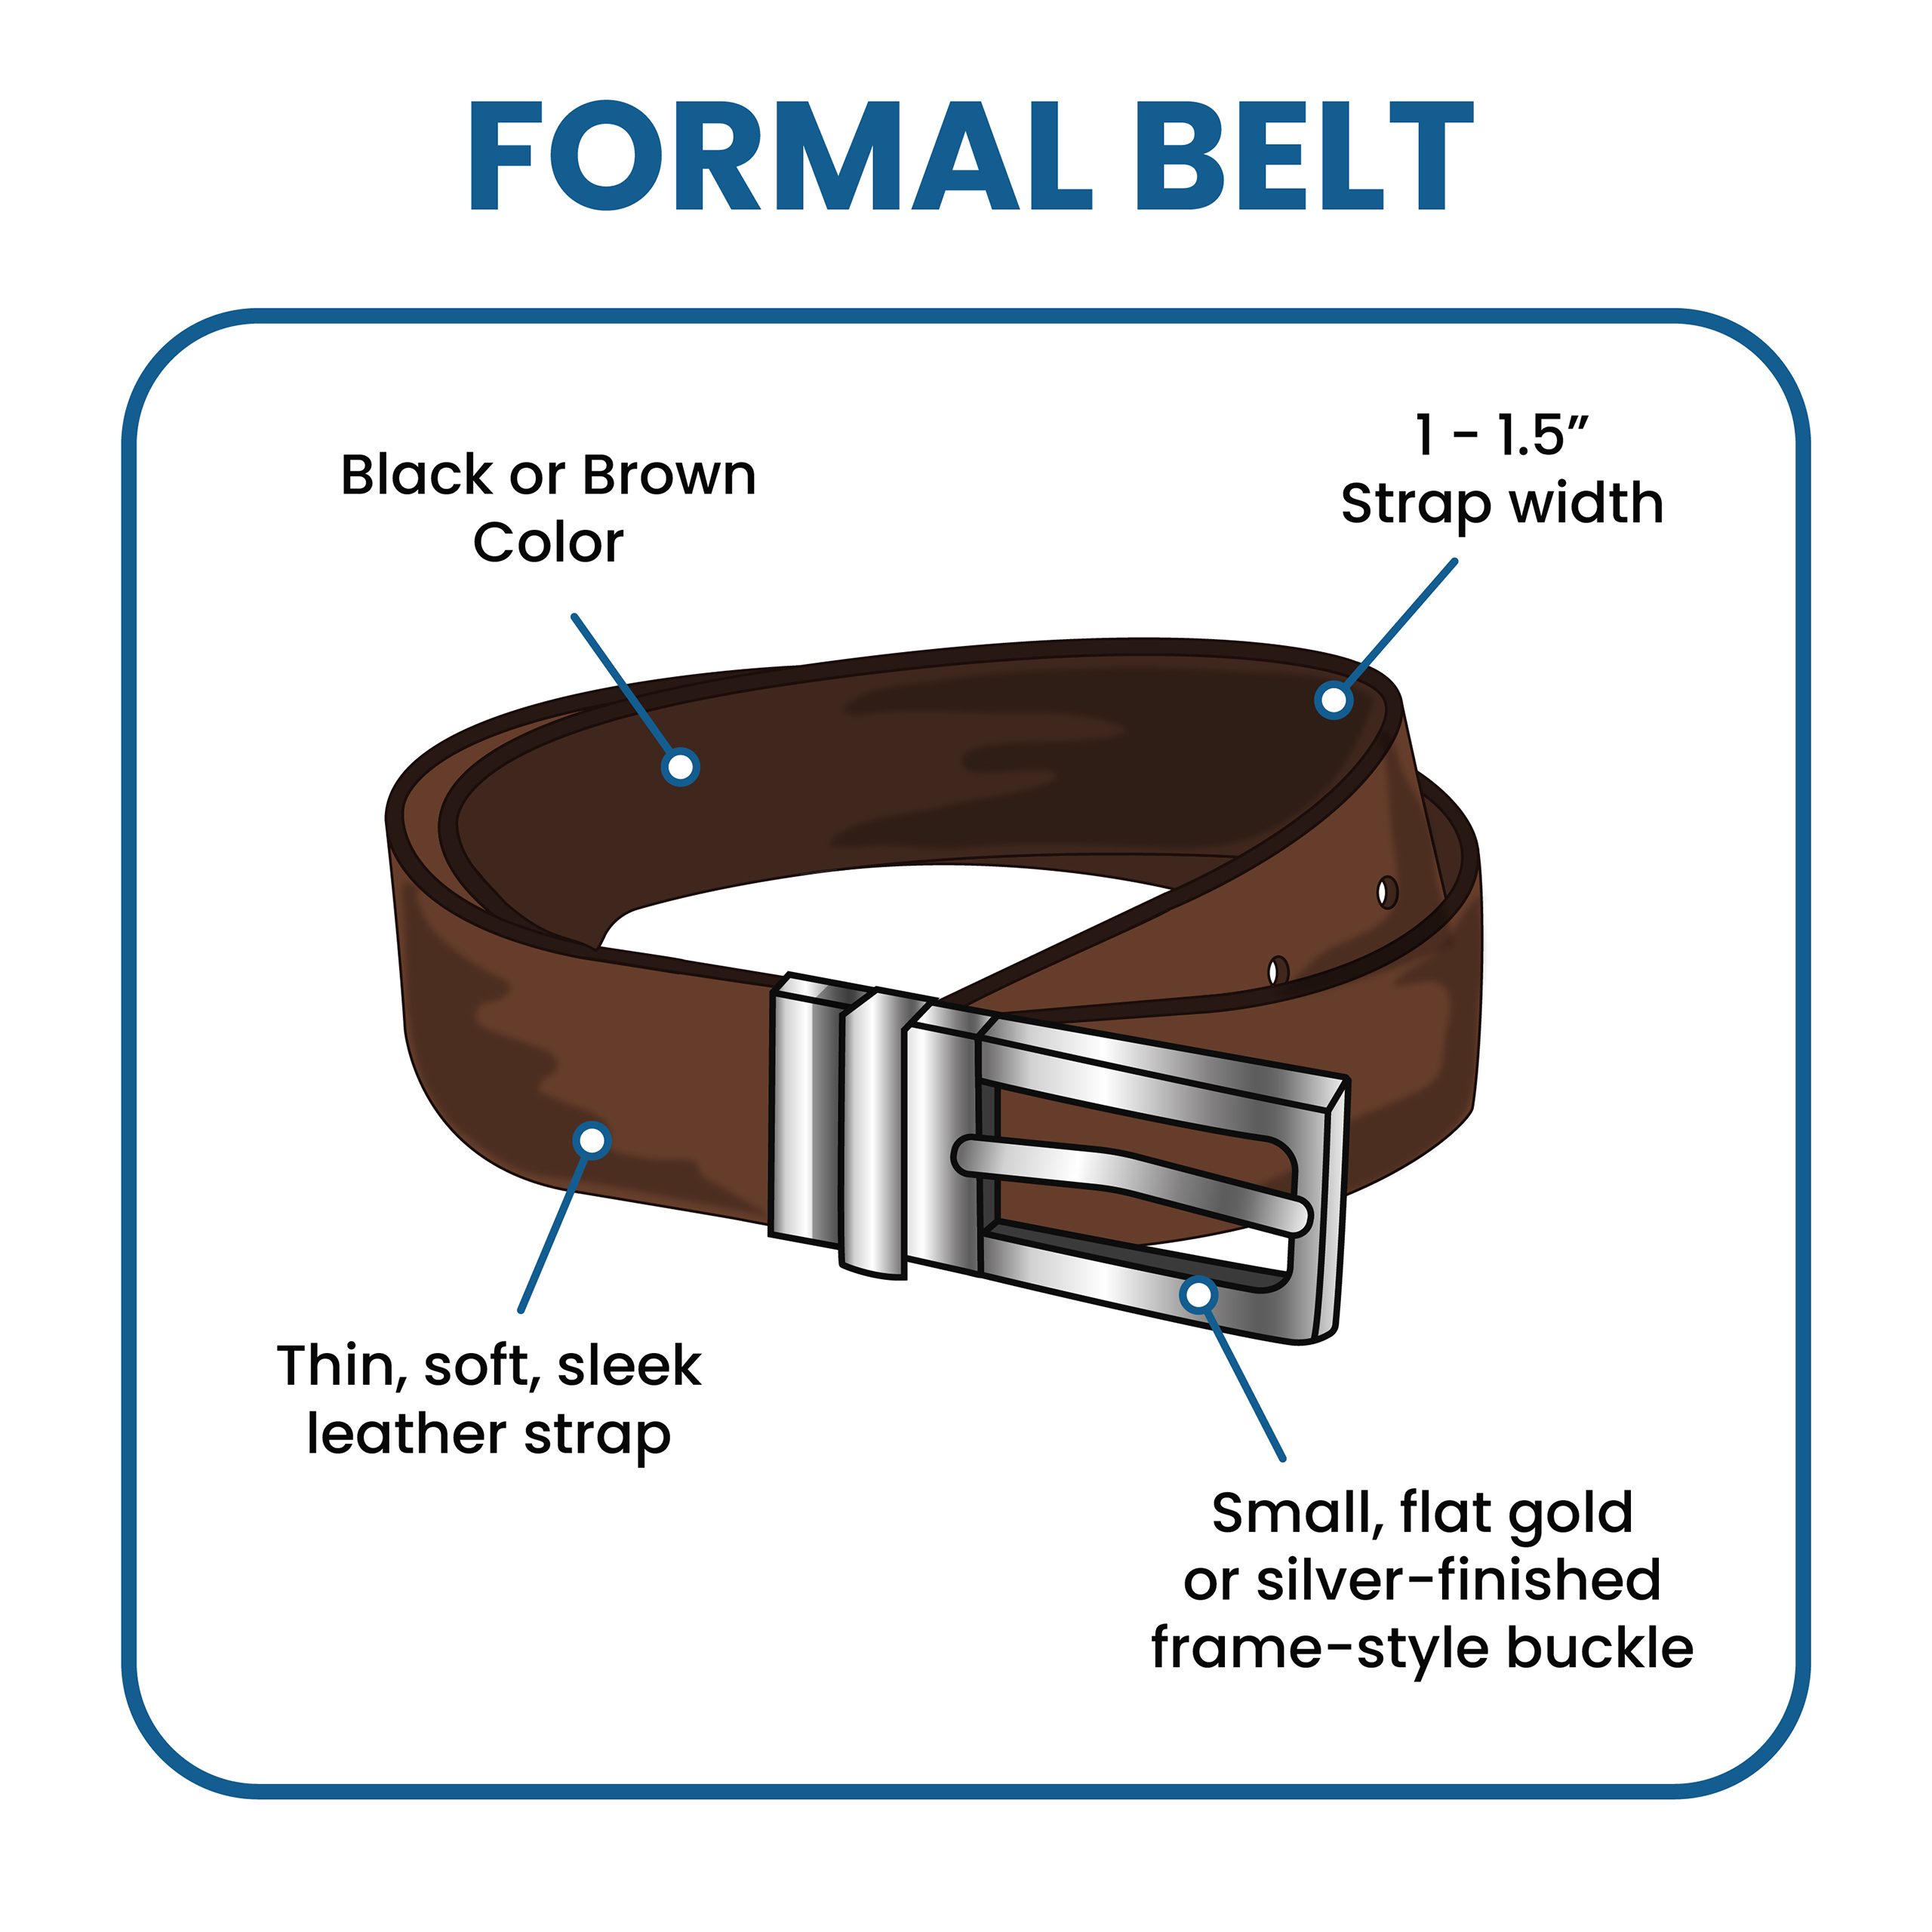 wrap belt style guide